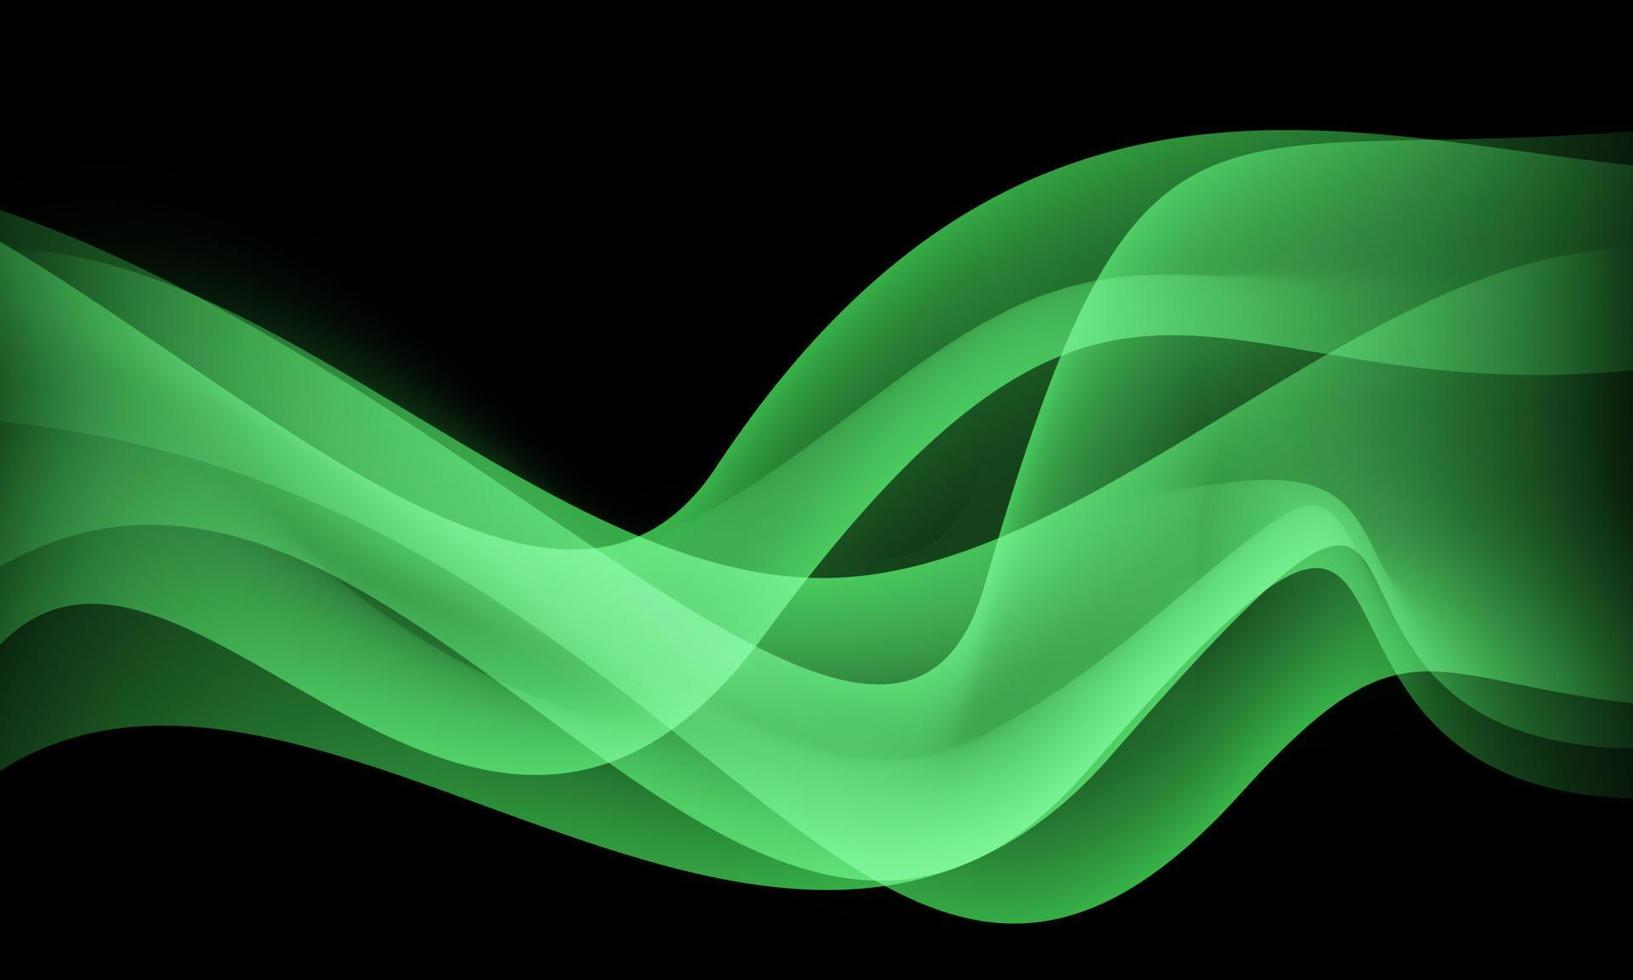 curva de onda verde abstracta en vector de fondo futurista de lujo moderno de diseño negro